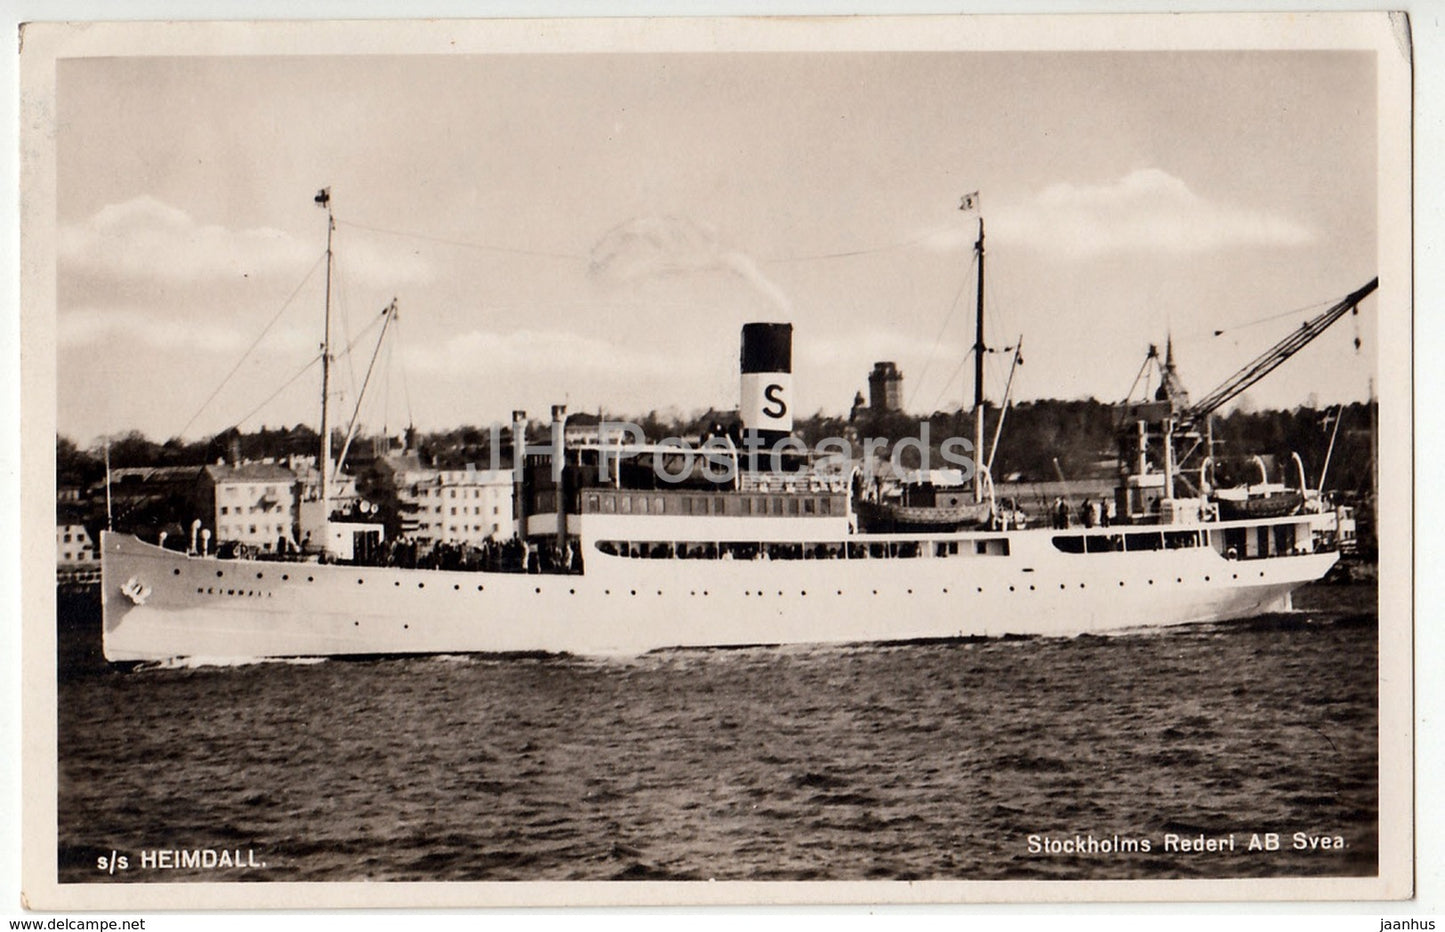 s/s Heimdall - ship - steamer - Stockholms Rederi AB Svea. - old postcard - Sweden - used - JH Postcards